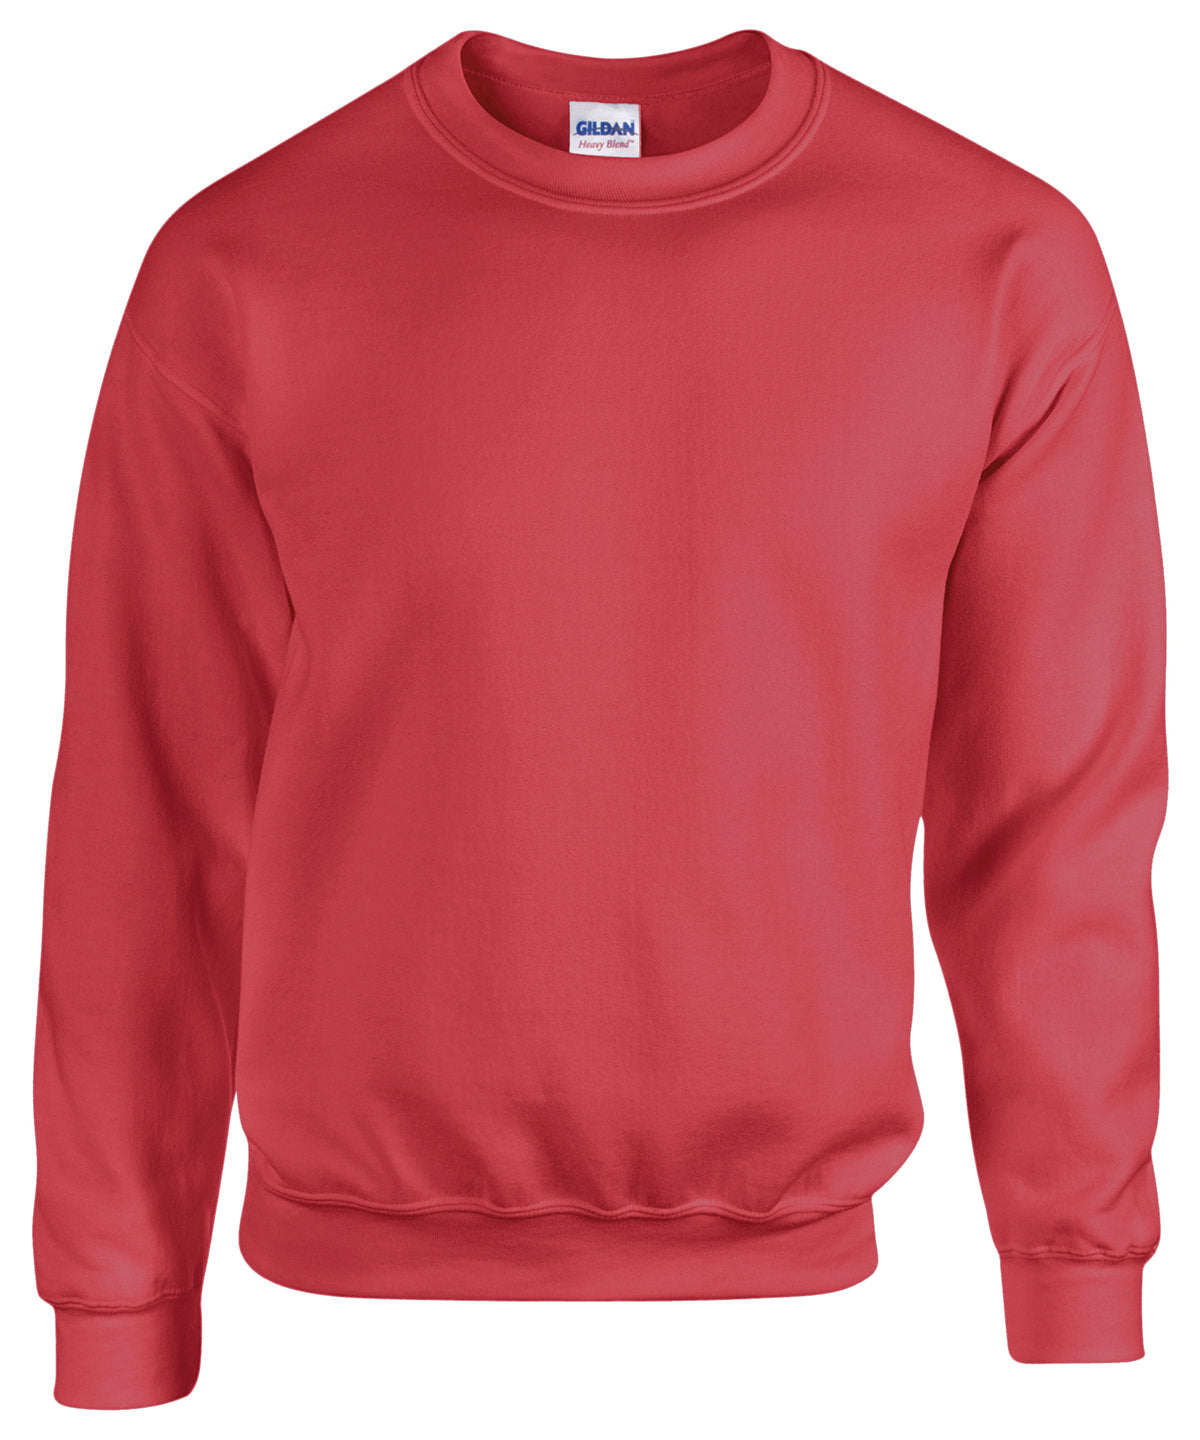 Gildan Heavy Blend Adult crew neck sweatshirt Antique Cherry Red